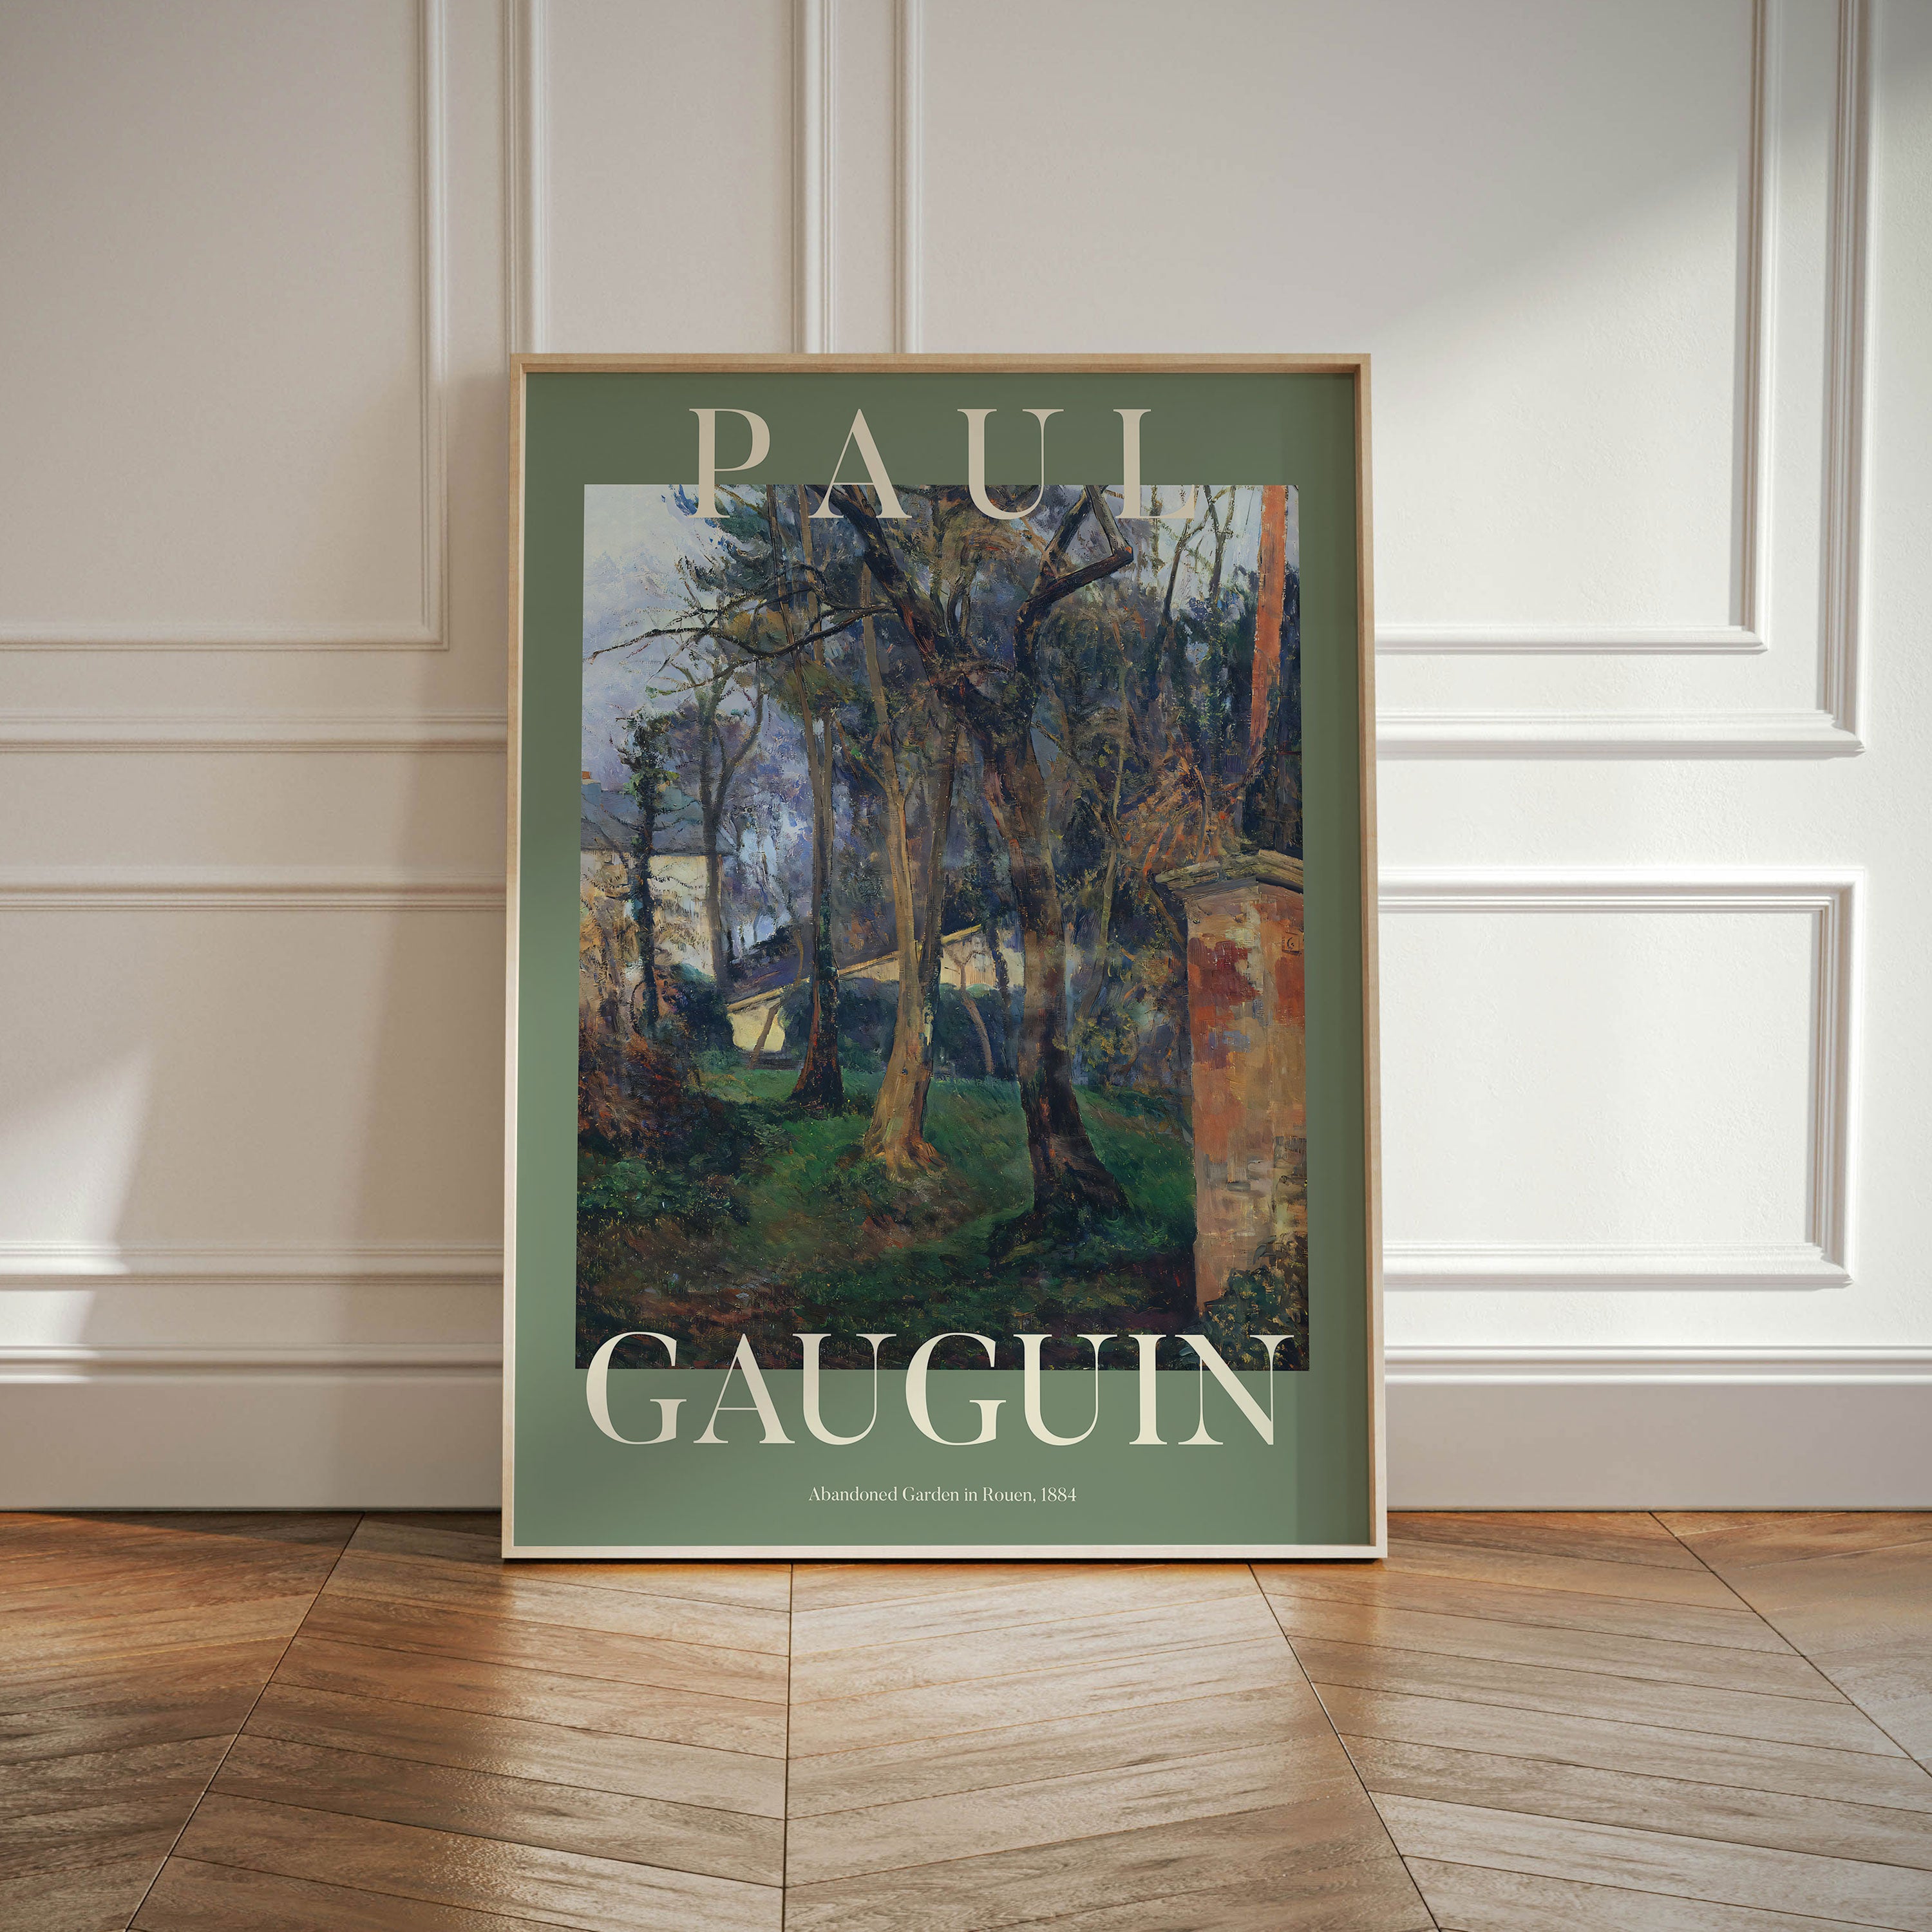 Paul Gauguin - Abandoned Garden in Rouen, 1884